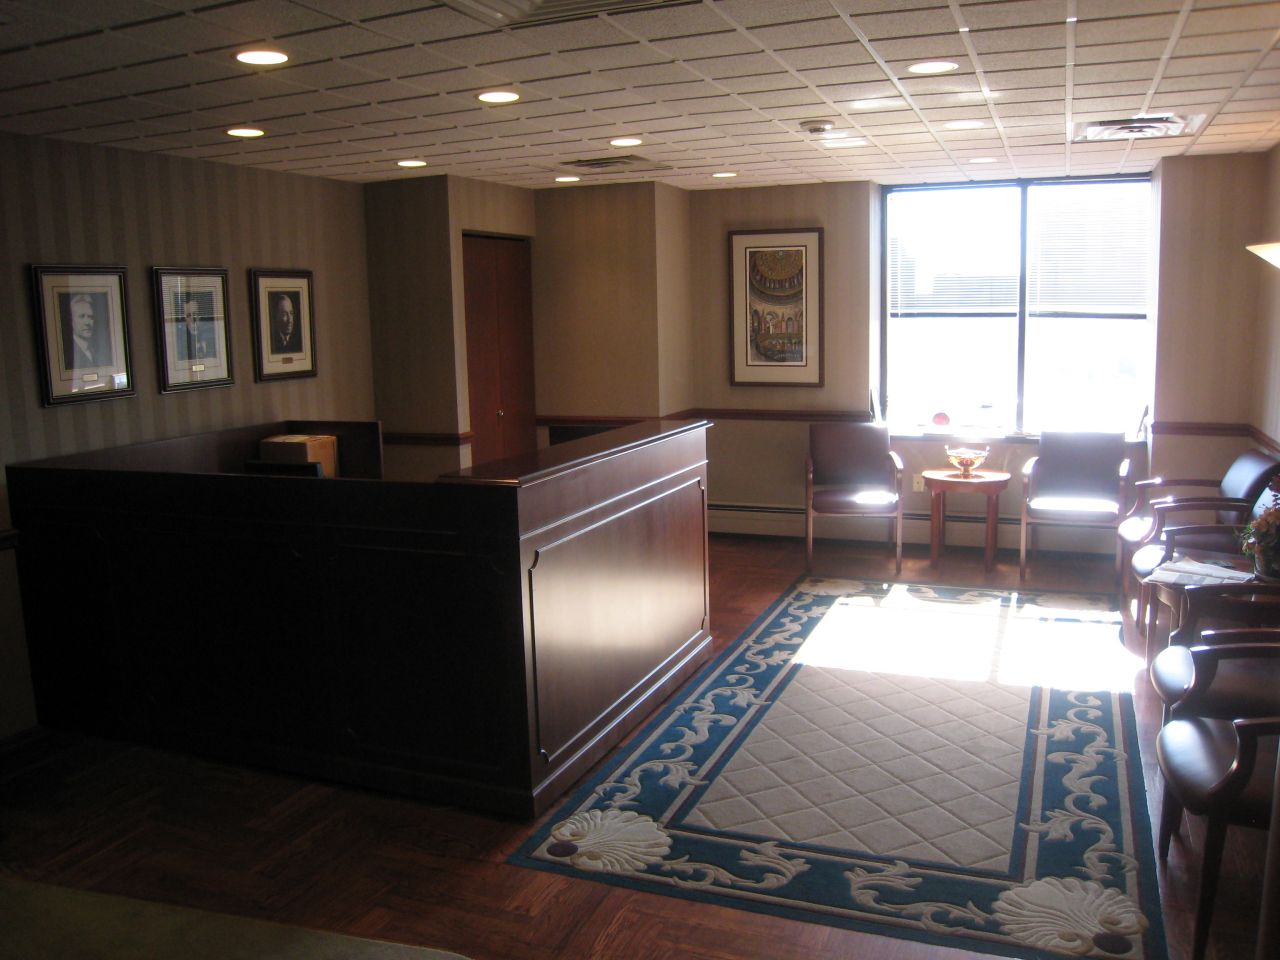 The lobby of Brown, Hay & Stephens